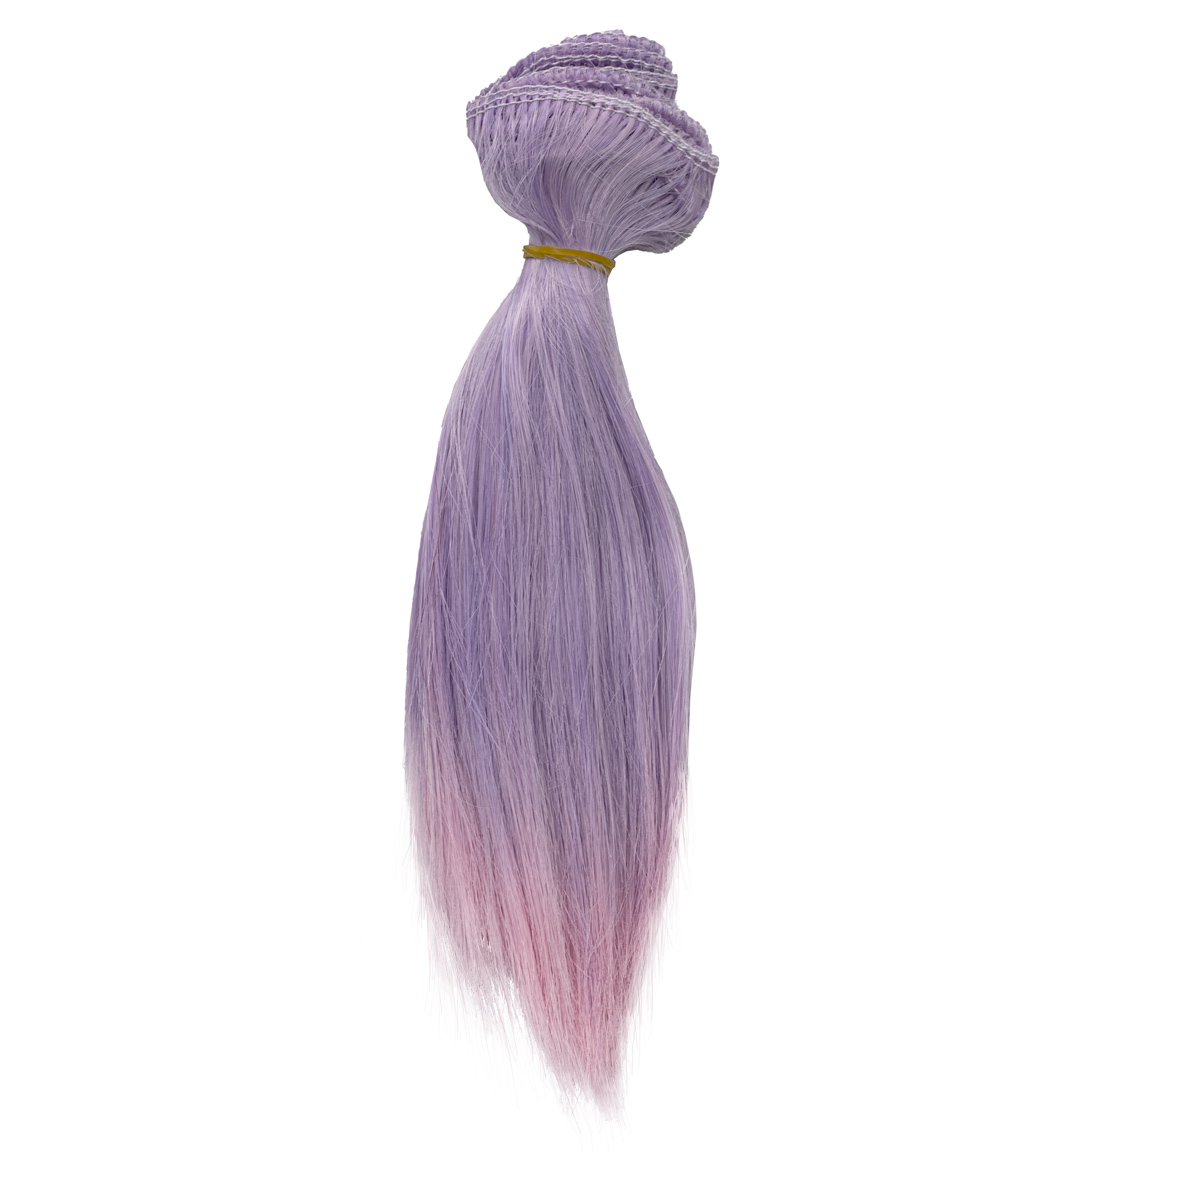 Трессы прямые Элит двухцветные ширина 100см длина пряди 17см из сиреневого в розовый цвет tsubaki спрей гладкие и прямые волосы